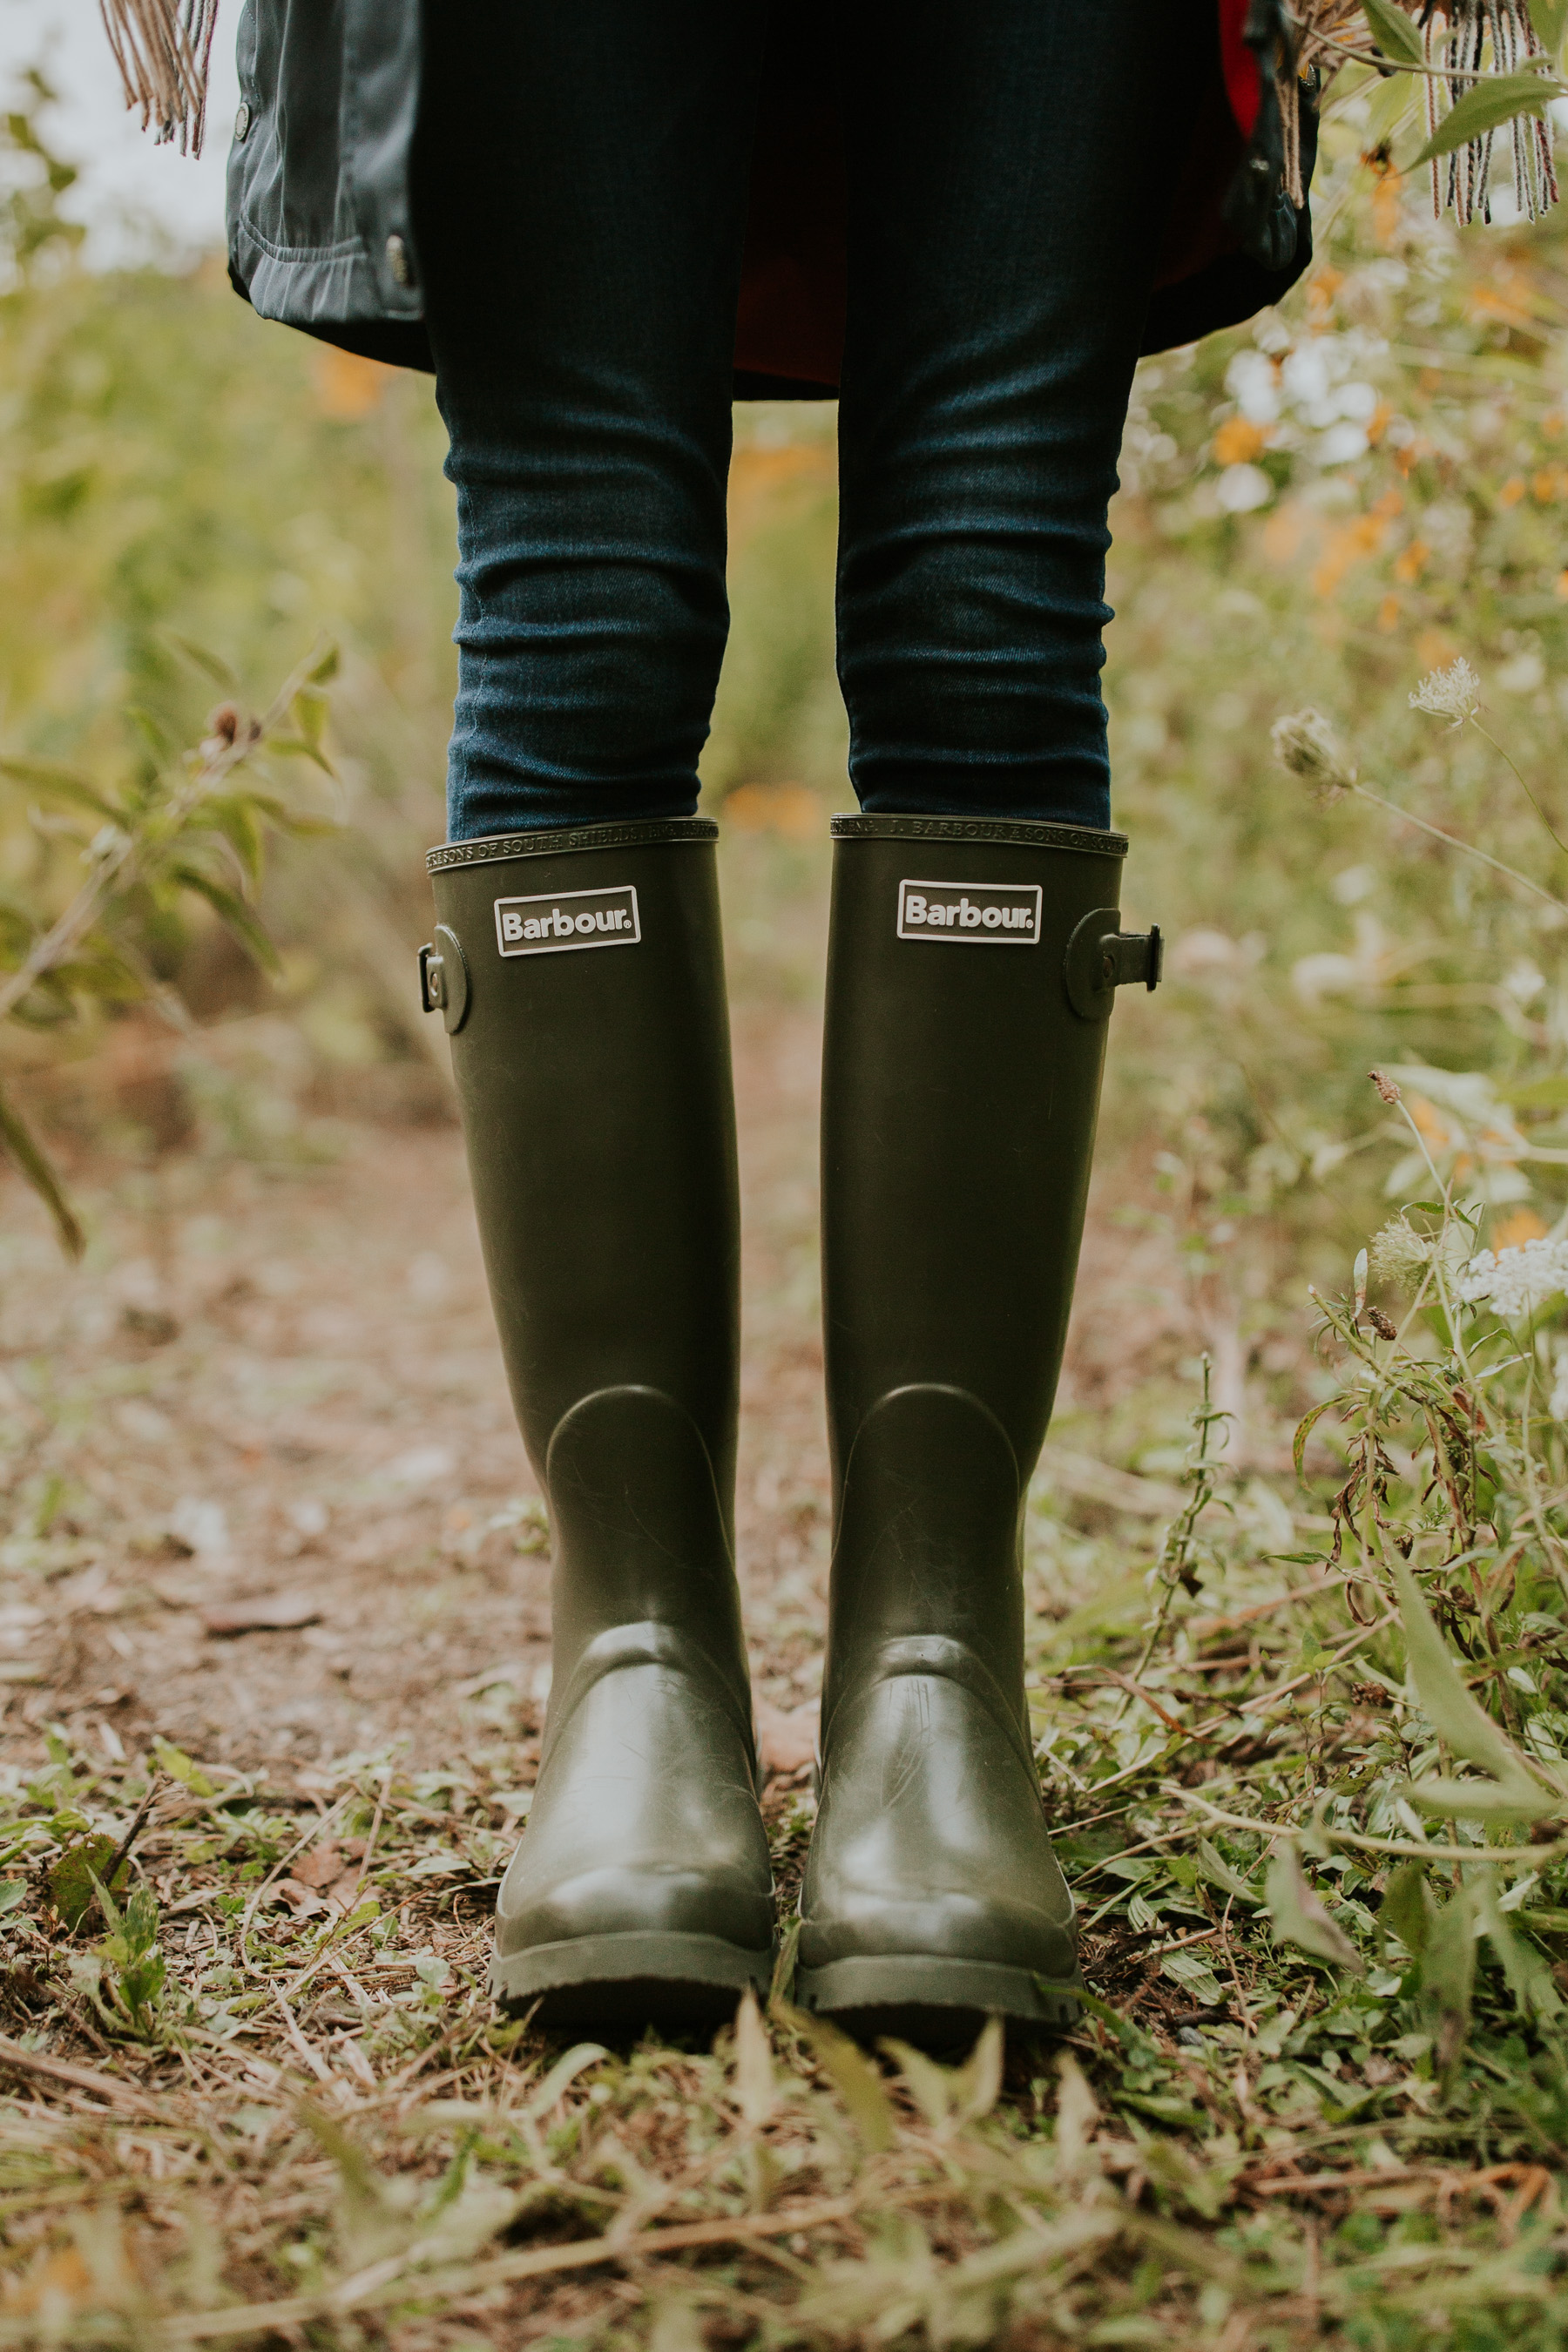 Barbour Womens Jarrow Mid Calf Winter Waterproof Wellington Rain Boots - Dark Olive